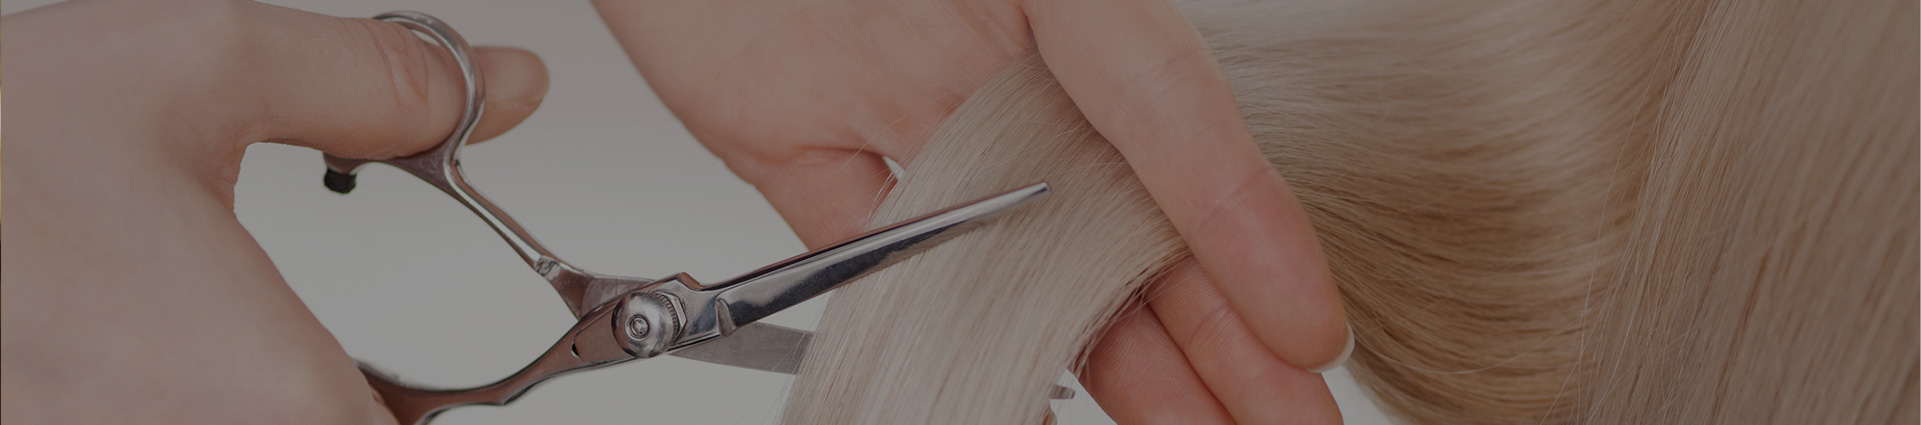 obcinanie włosów nożyczkami